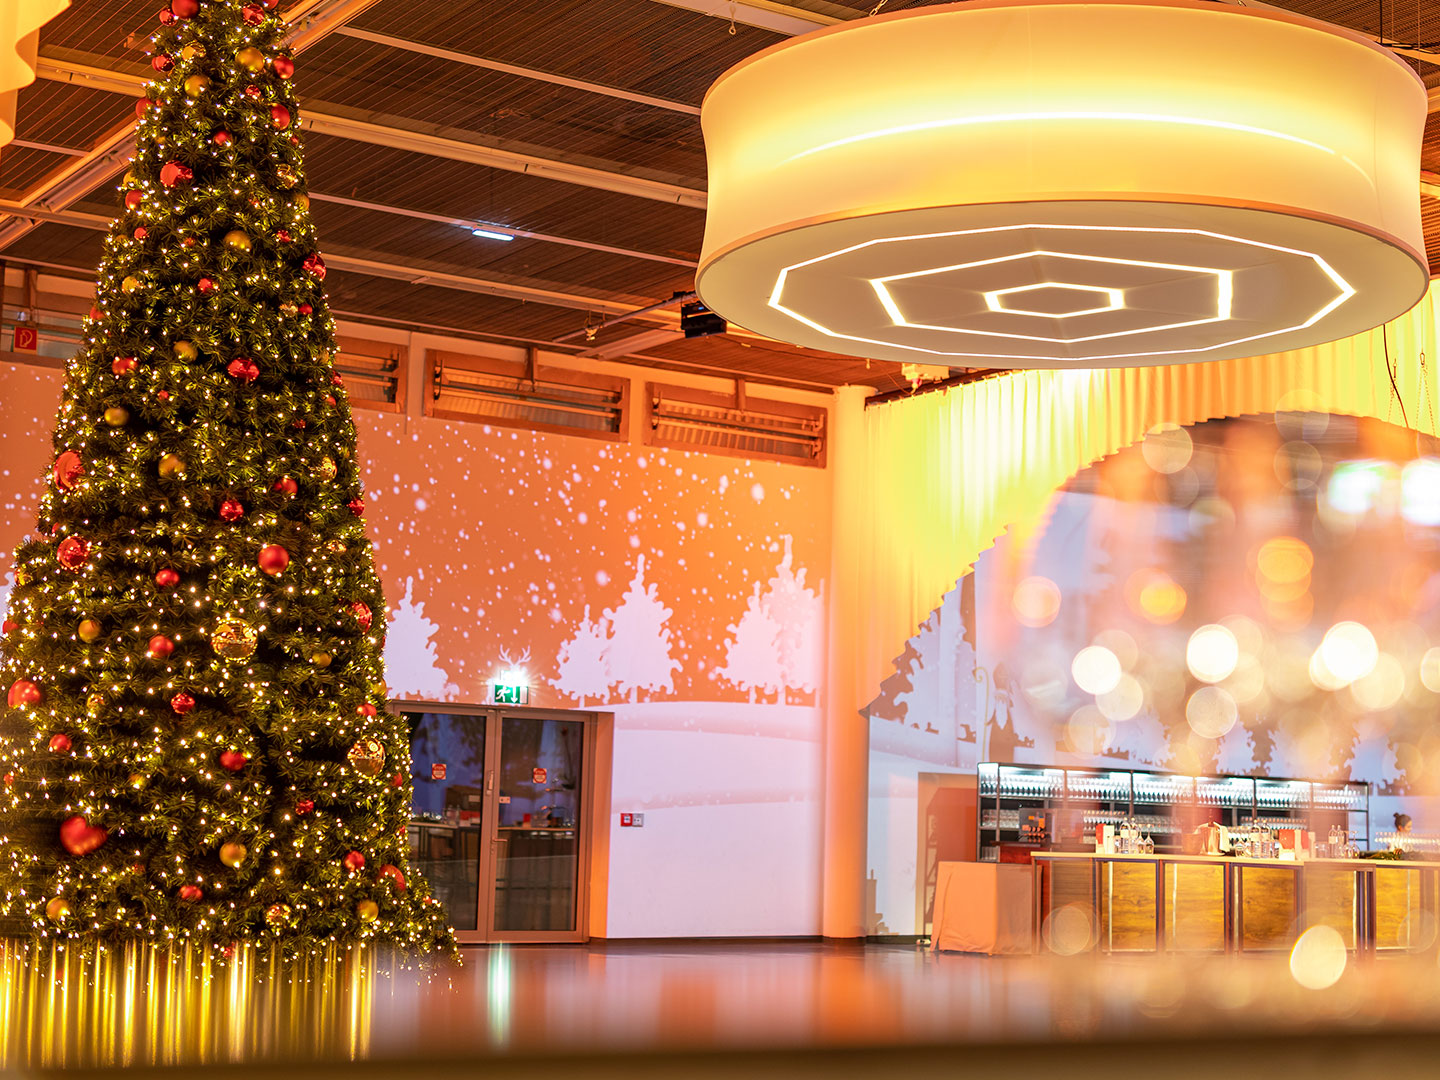 Foto: Weihnachtsfeier Halle X2 Weihnachtsbaum mit Bar und Beleuchtung